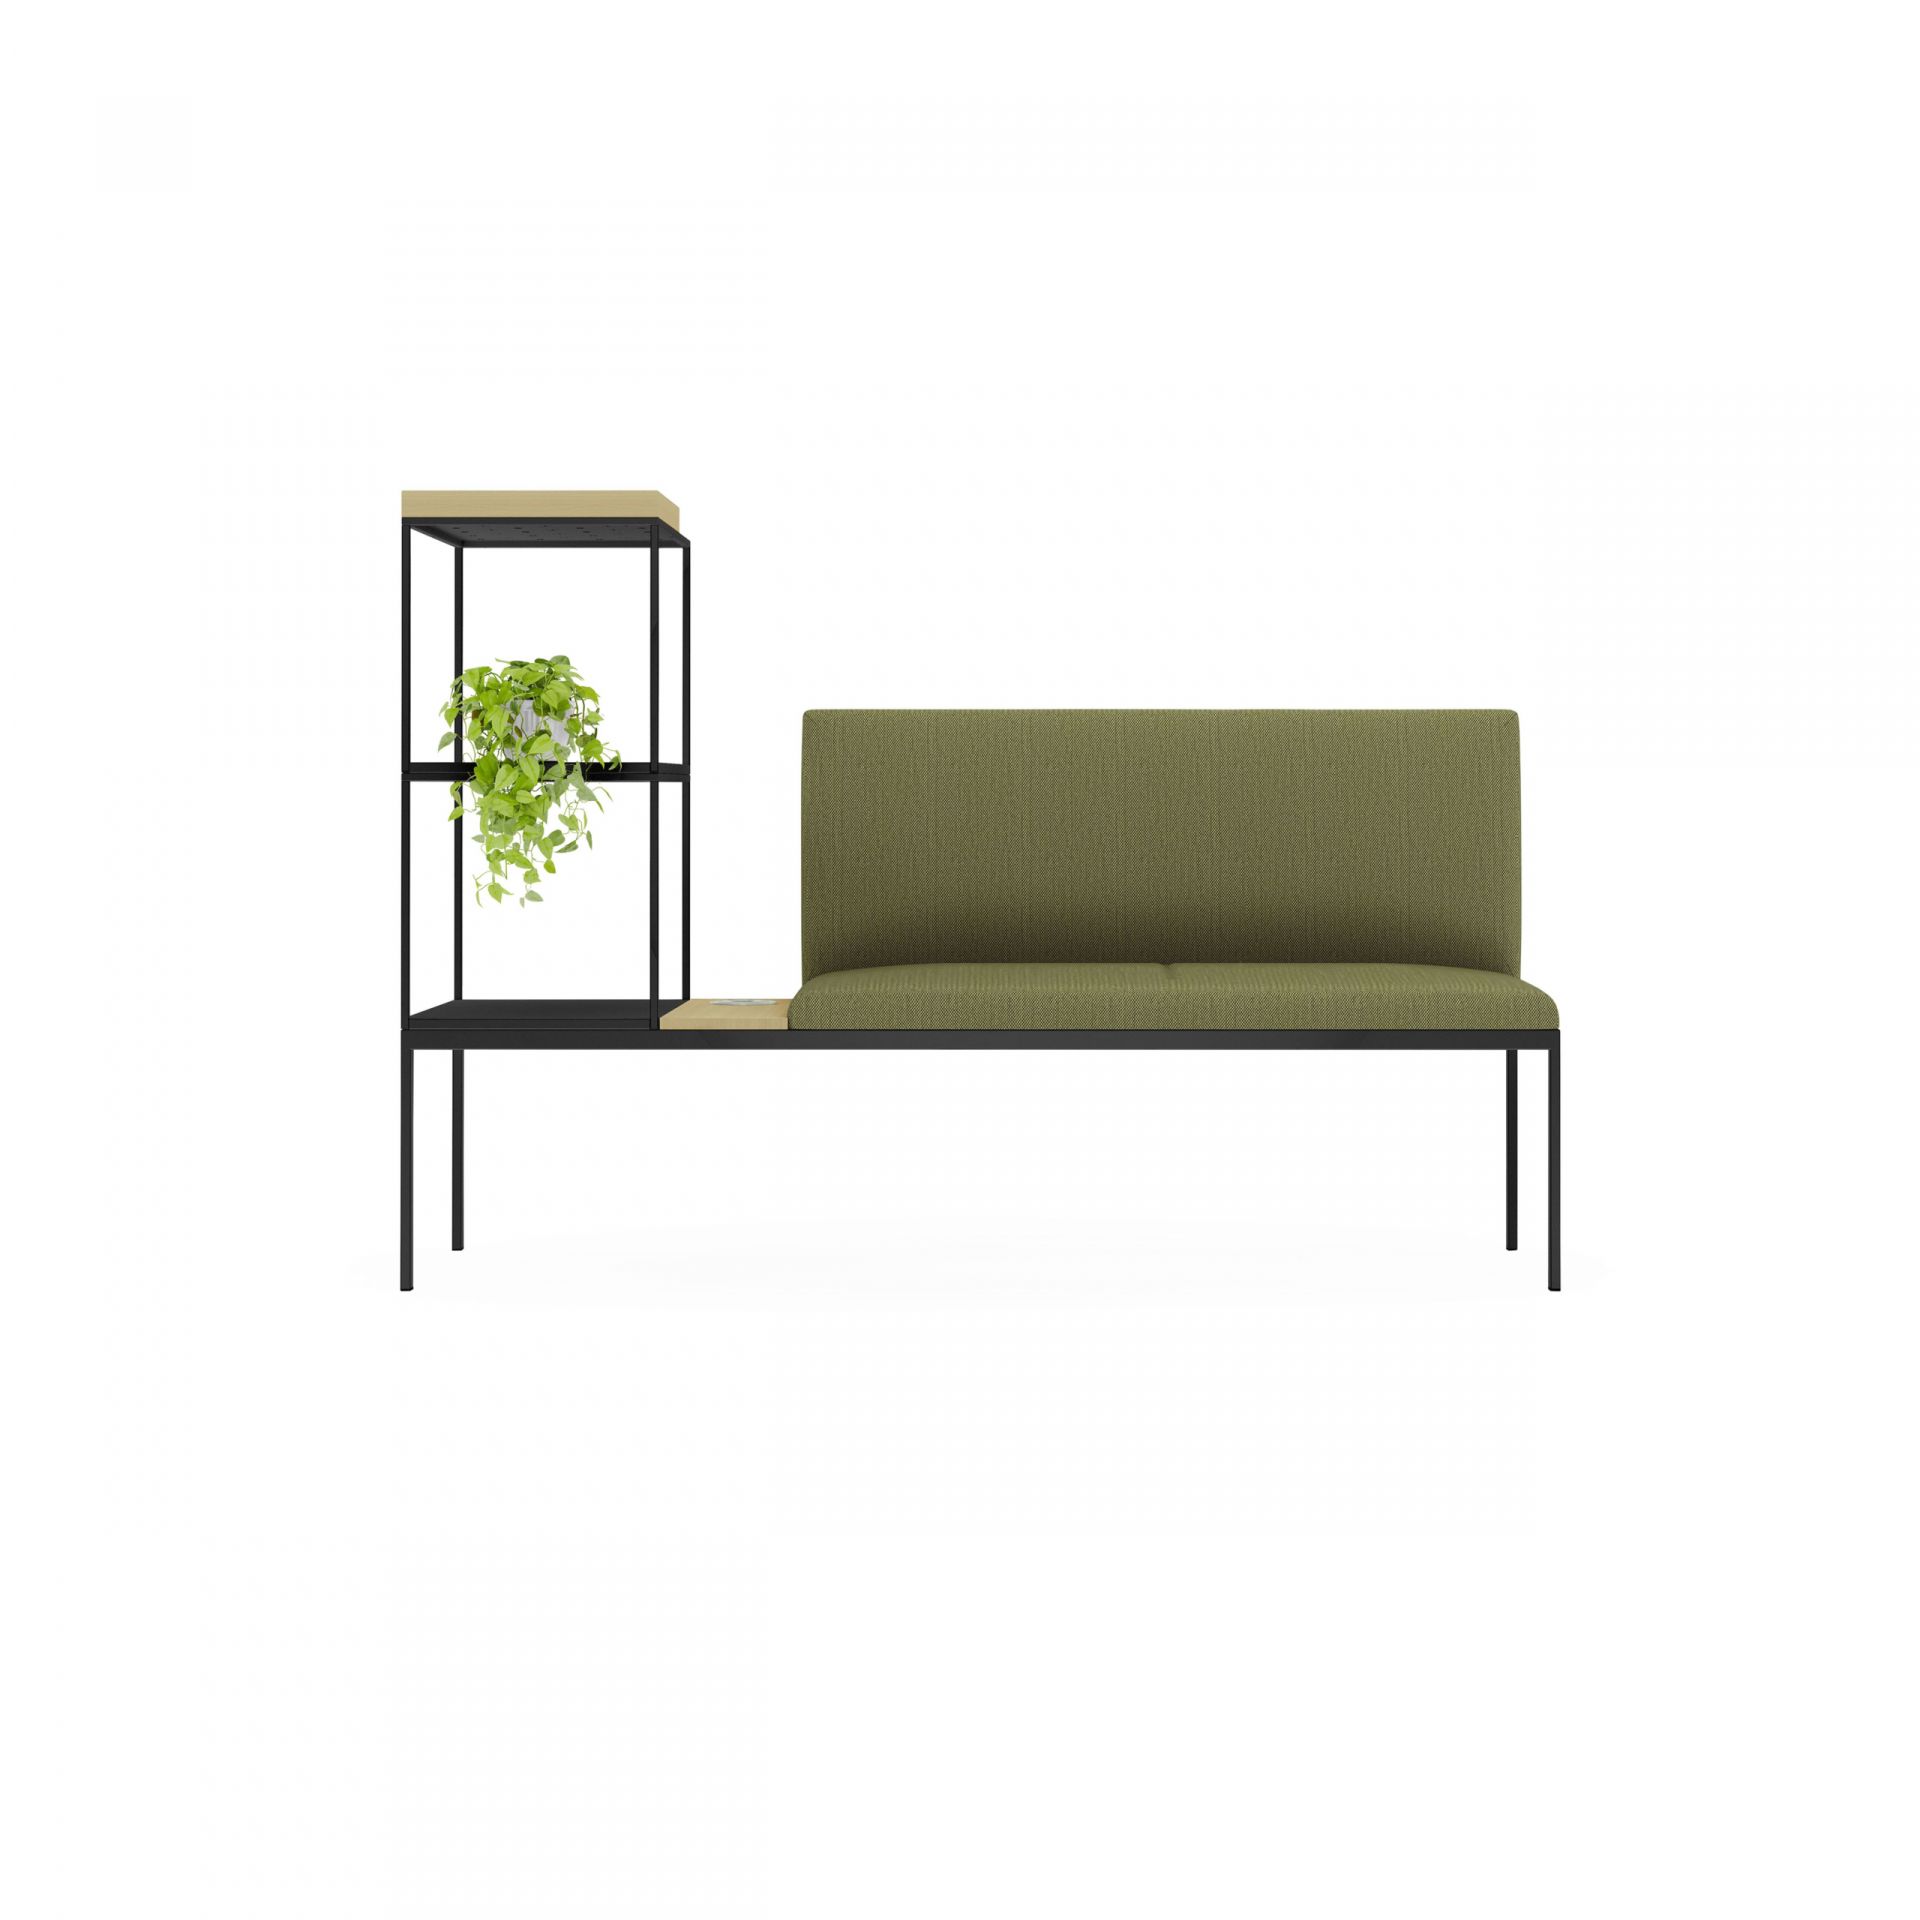 Create Seating Byggbara moduler: sittmöbler, förvaring och rum-i rum